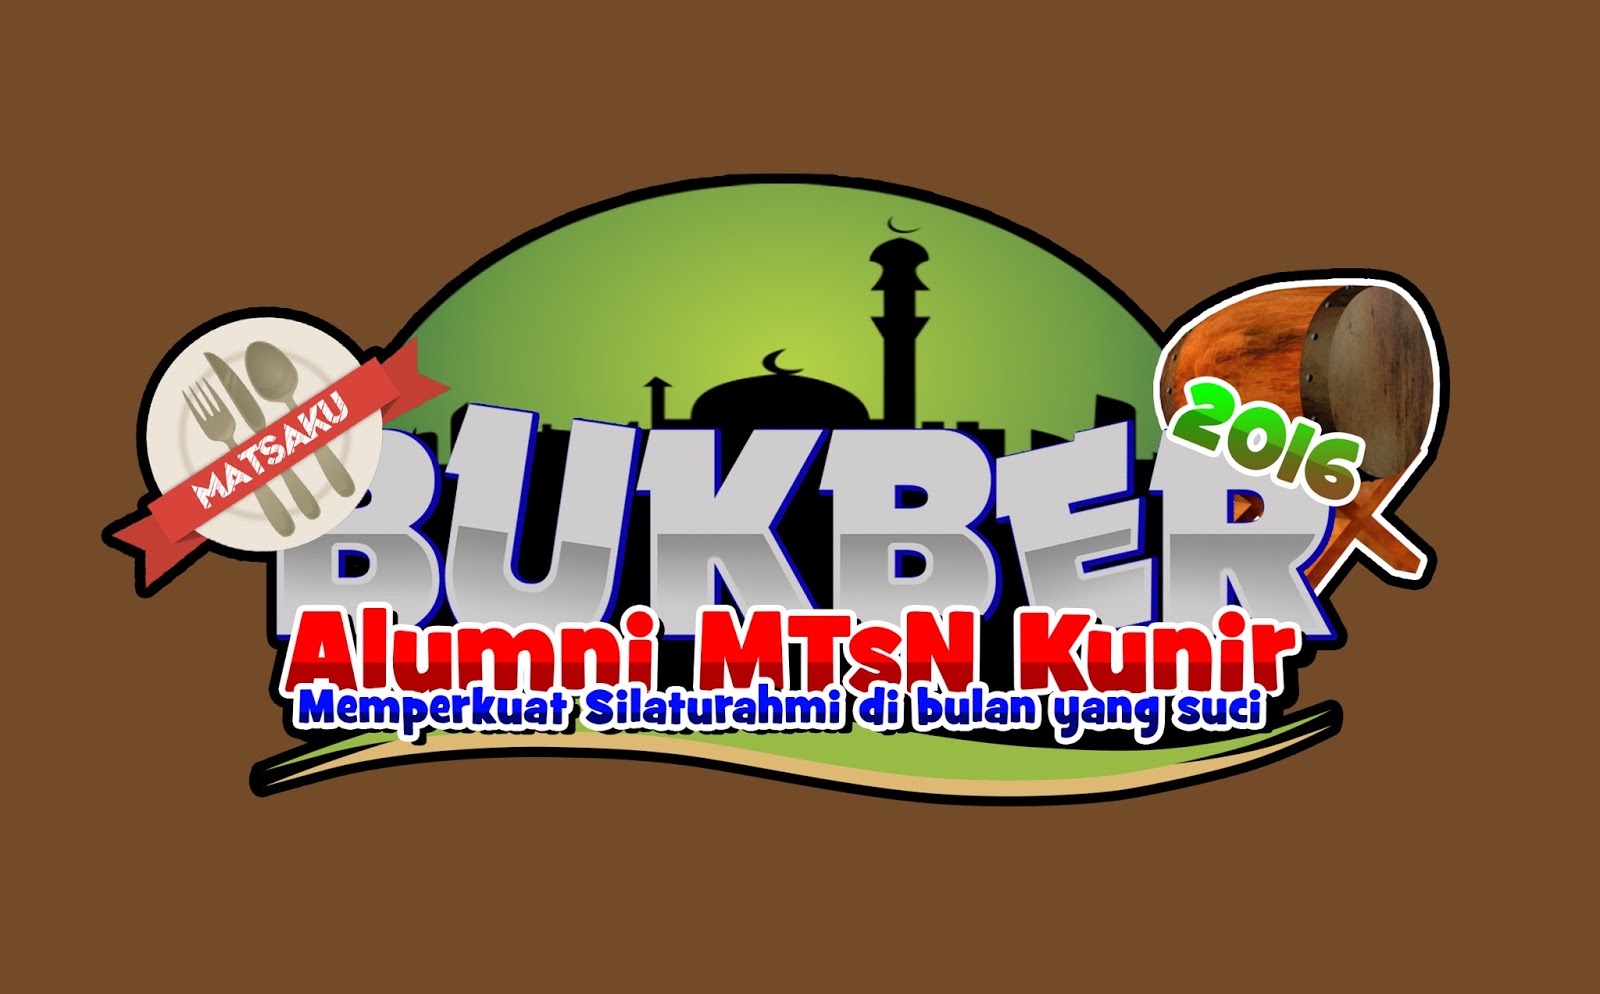  Desain Stiker  Bukber Alumni Matsaku firedpen